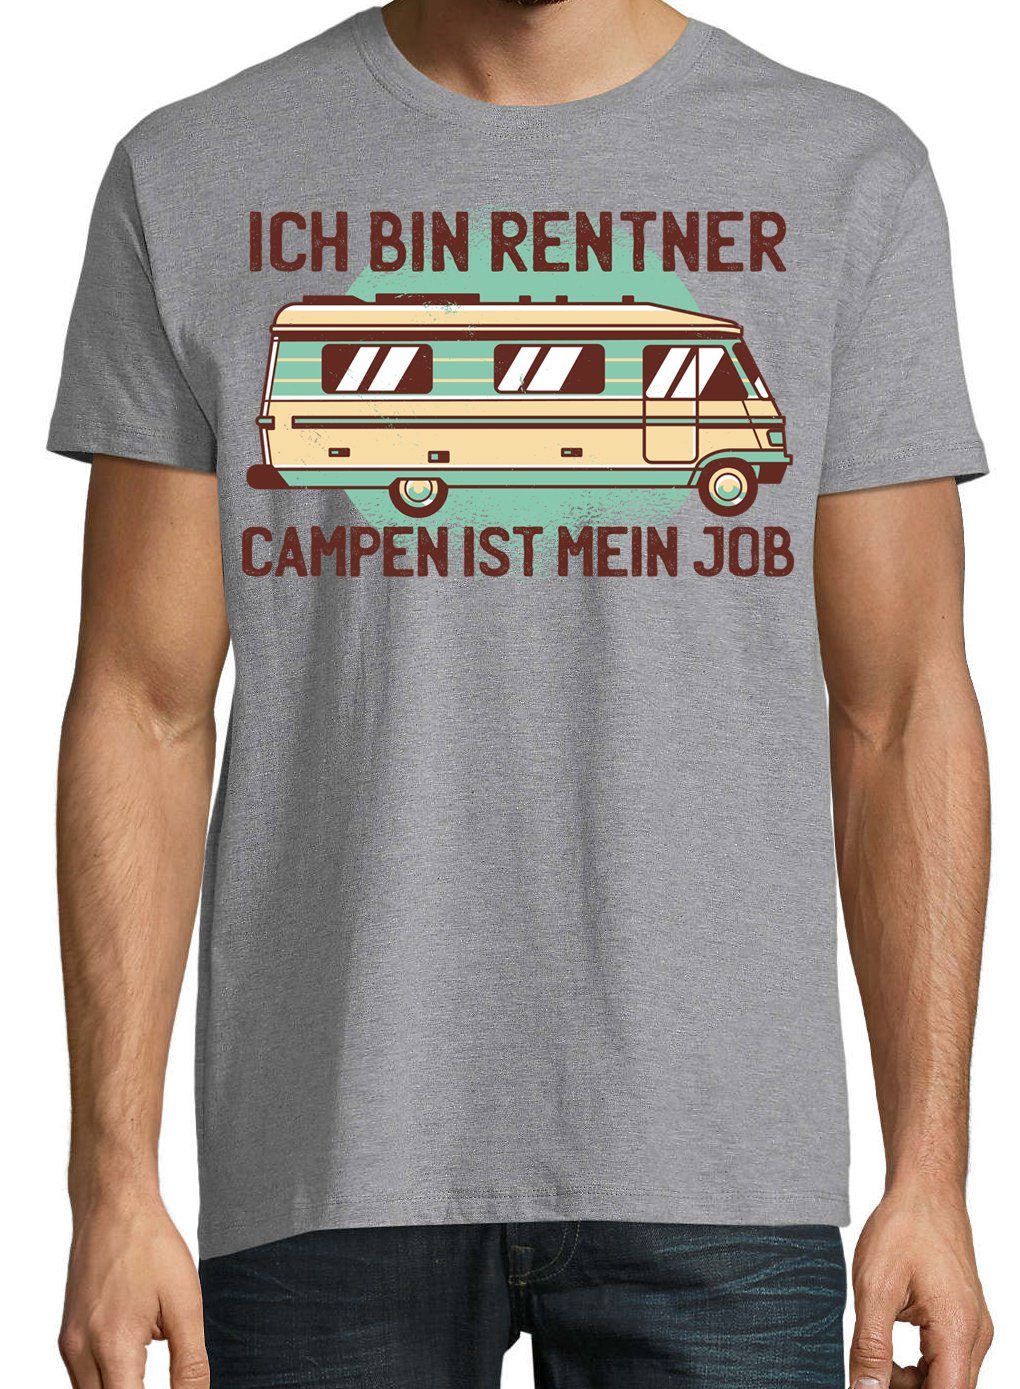 Youth Designz Herren Grau Trendigem bin Ich Frontdruck mein ist Campen Rentner T-Shirt mit Job T-Shirt